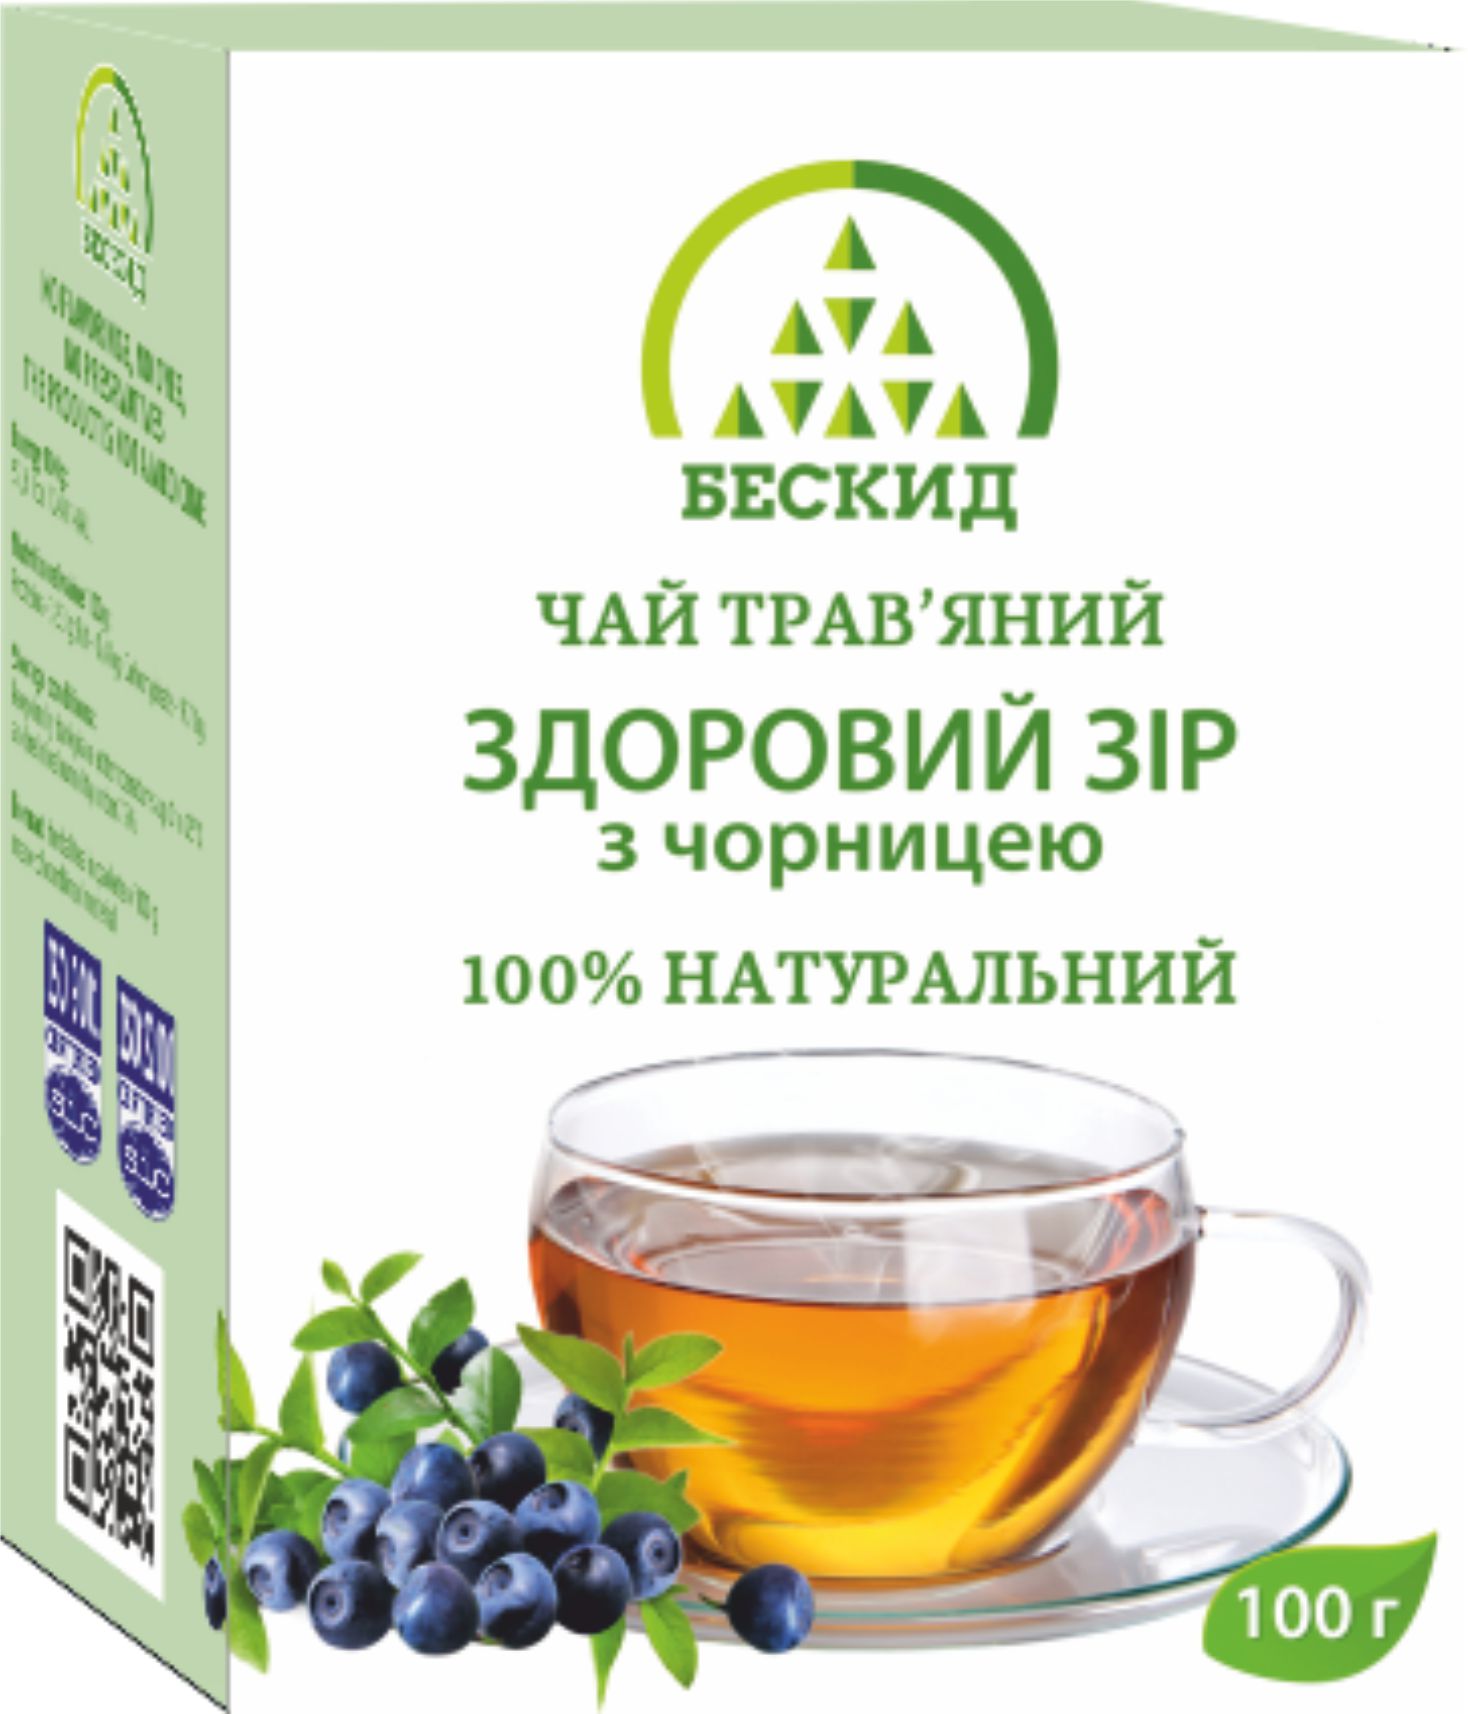 Чай травяной «Здоровое зрение» с черникой